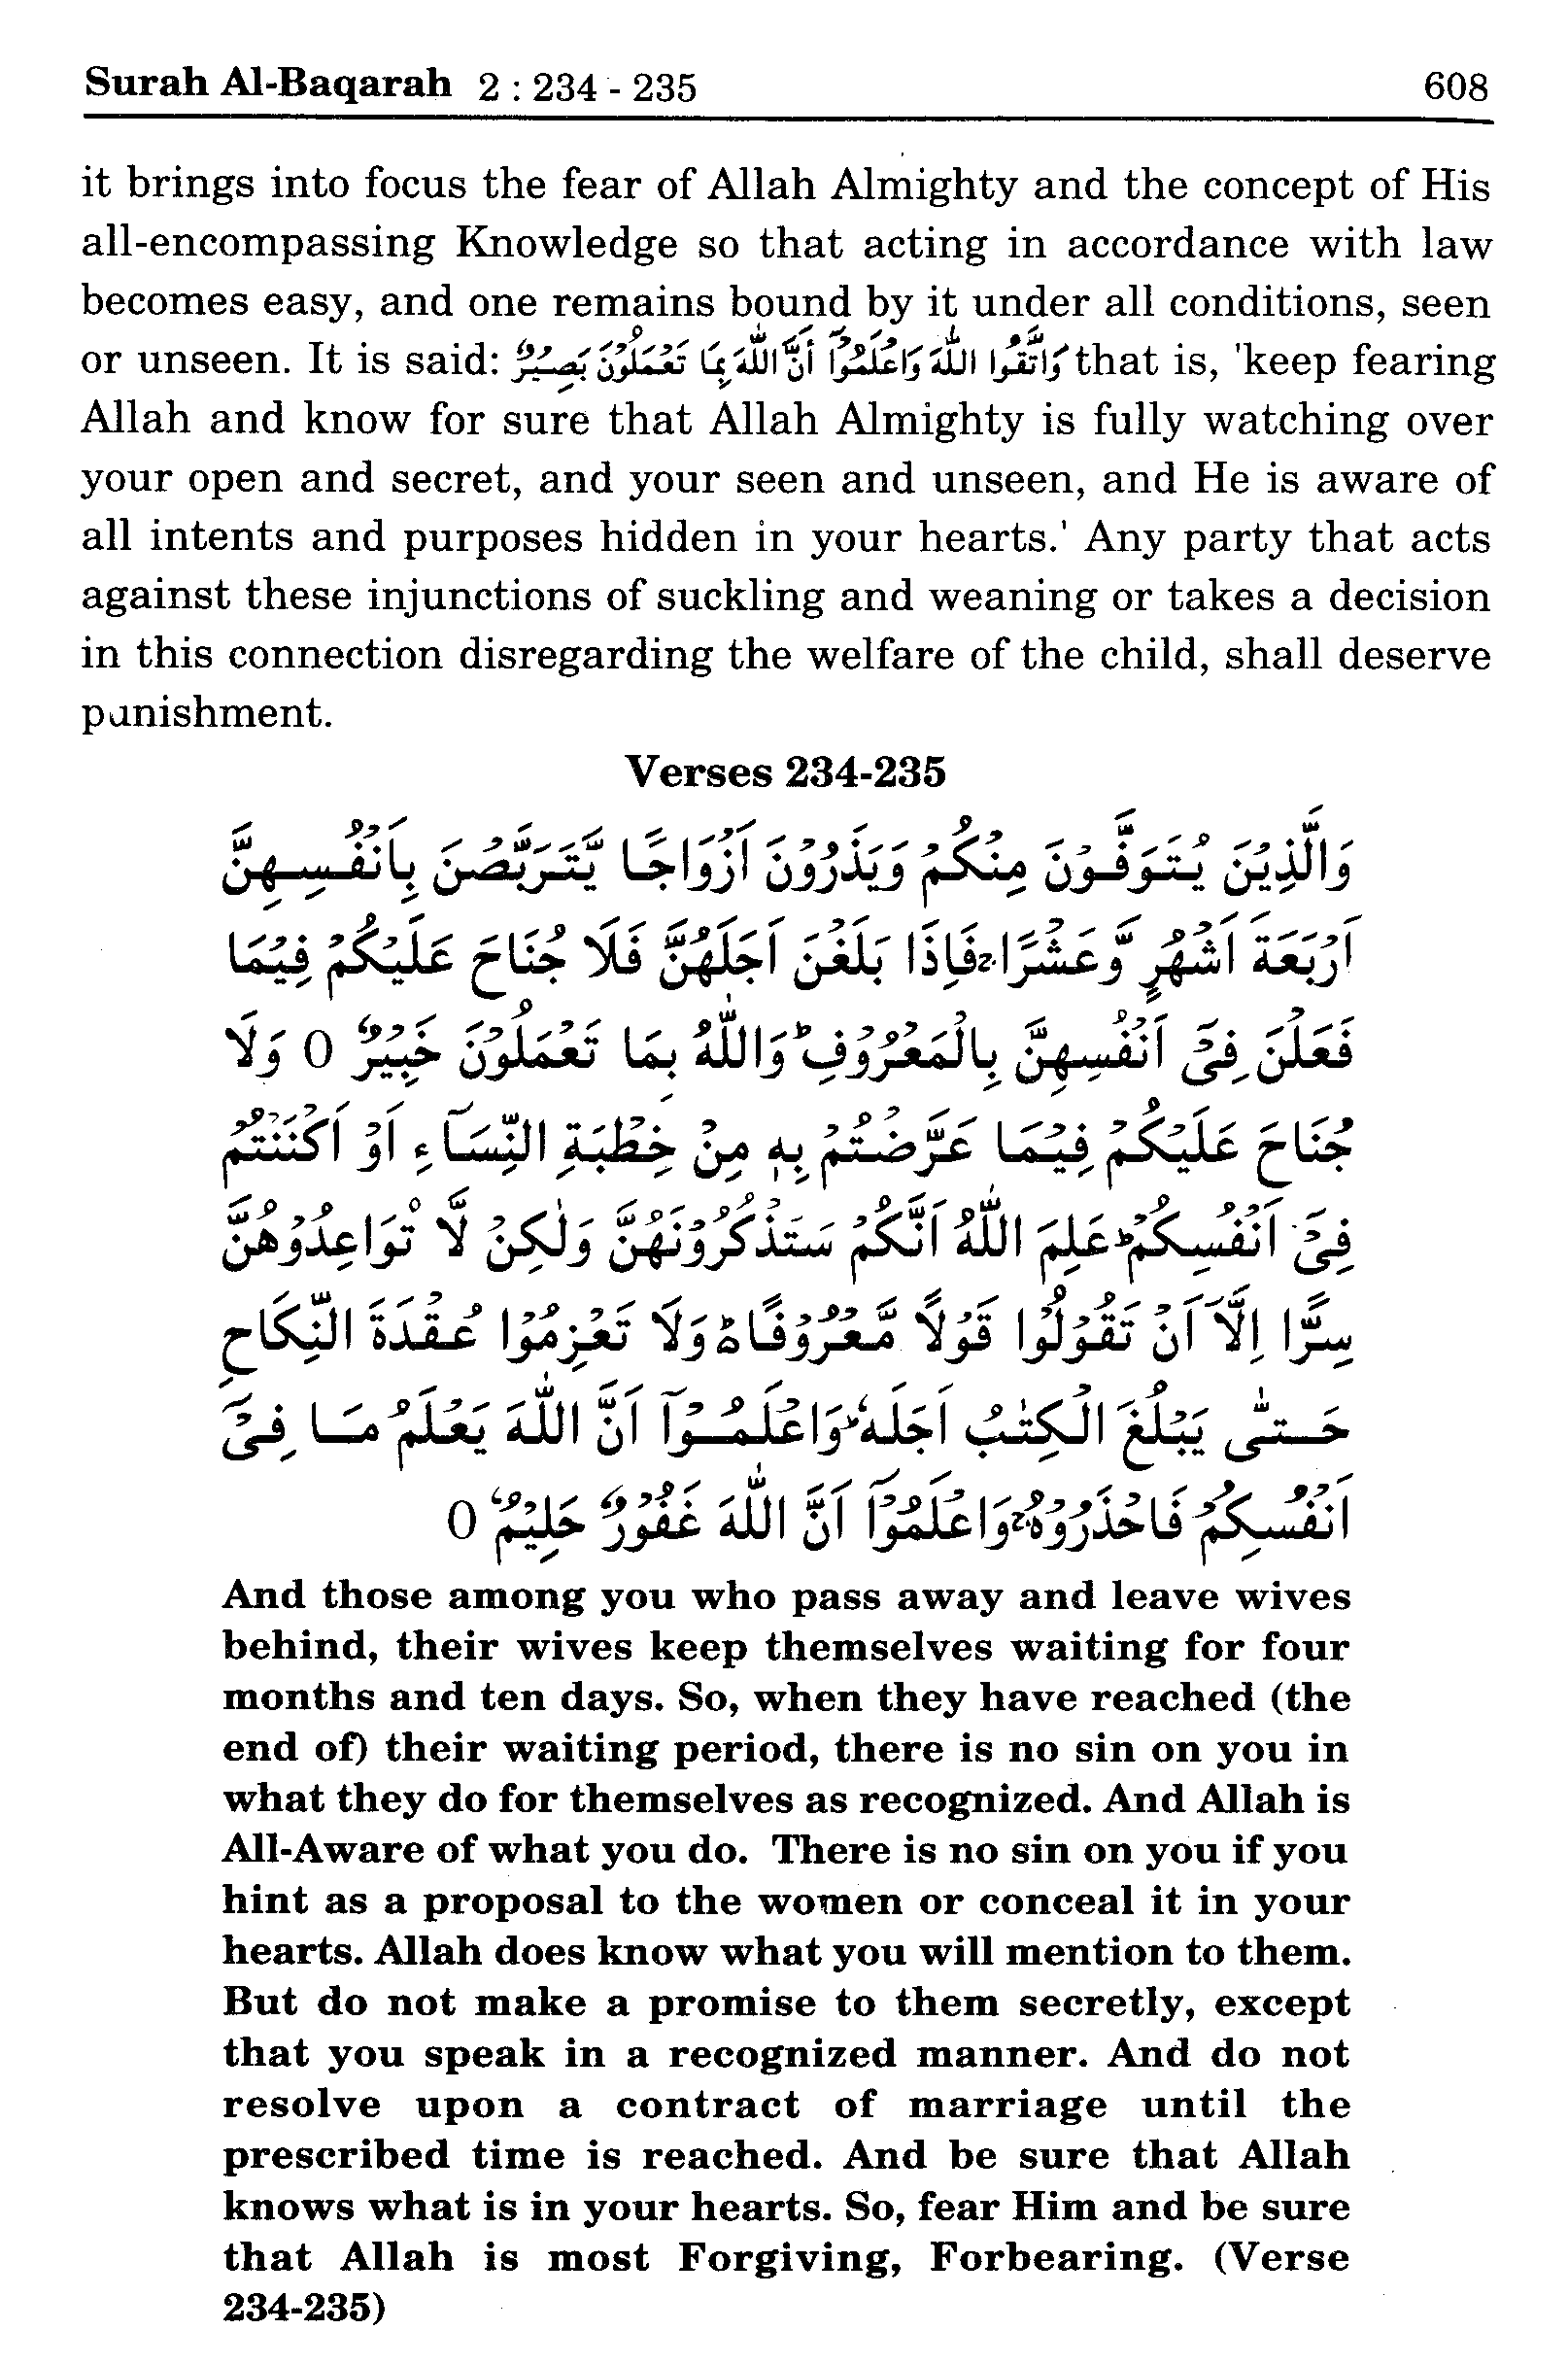 Surah Al-Baqara 2:234-235 - Maariful Quran - Maarif ul Quran 